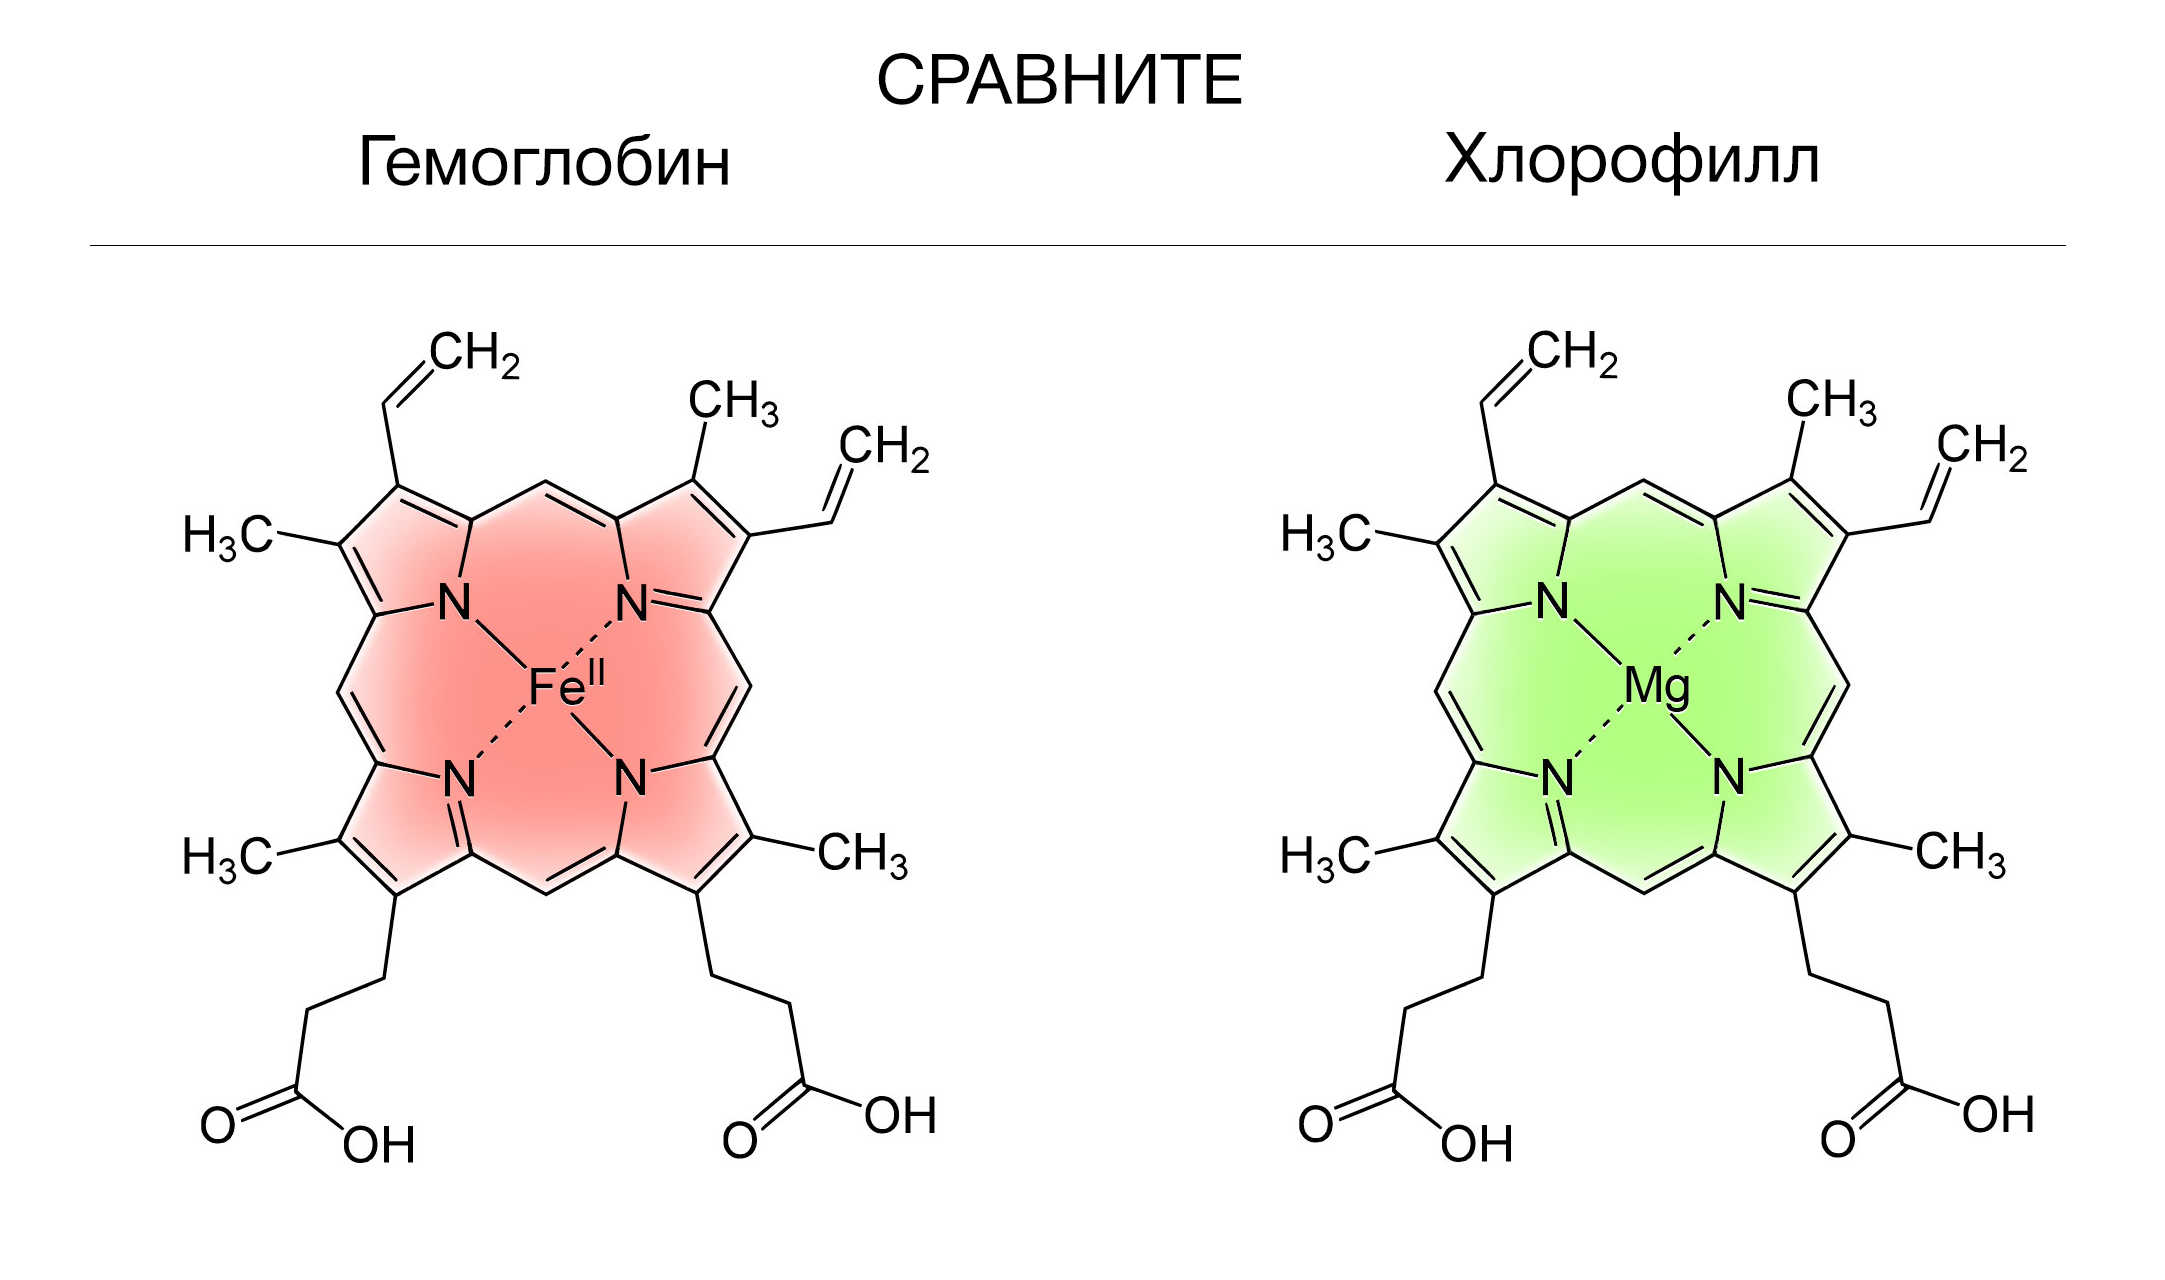 Купить в Молдове Бады - Хлорофилл жидкий НСП (Chlorophyll Liquid NSP) экстракт хлорофилла из люцерны на официальном сайте NSP Moldova. 